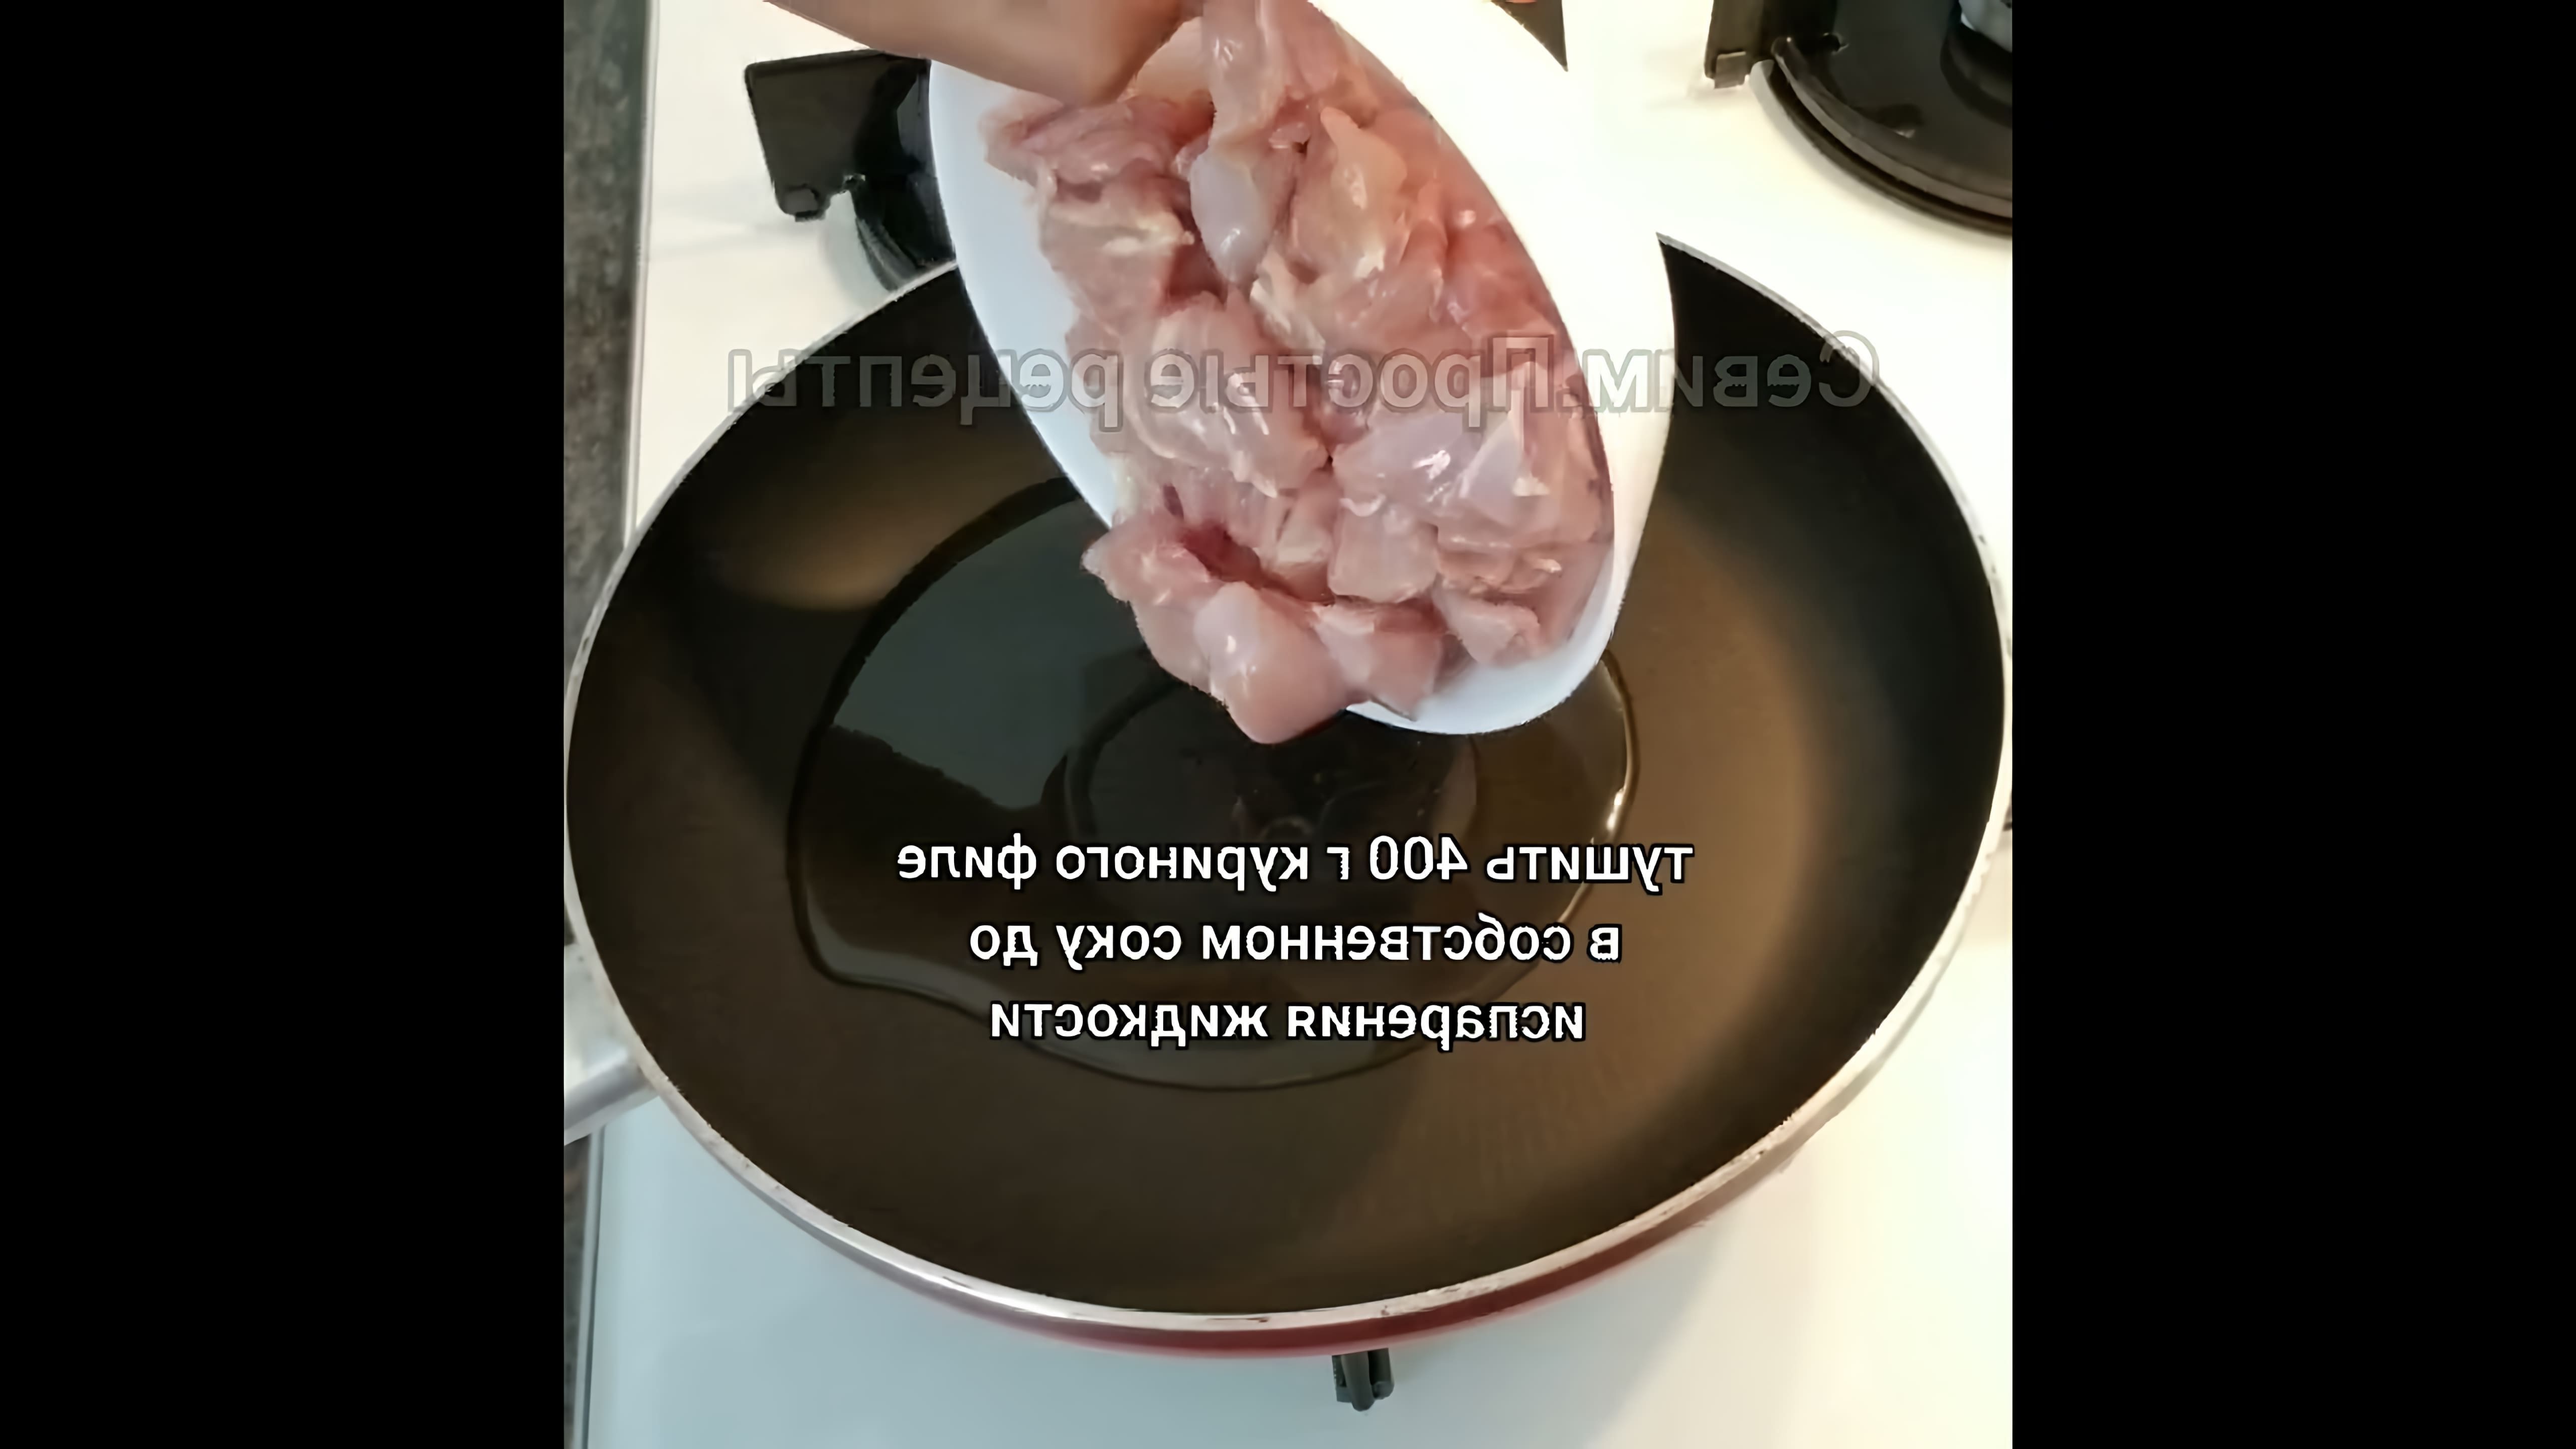 В этом видео-ролике демонстрируется процесс приготовления вермишели с курицей